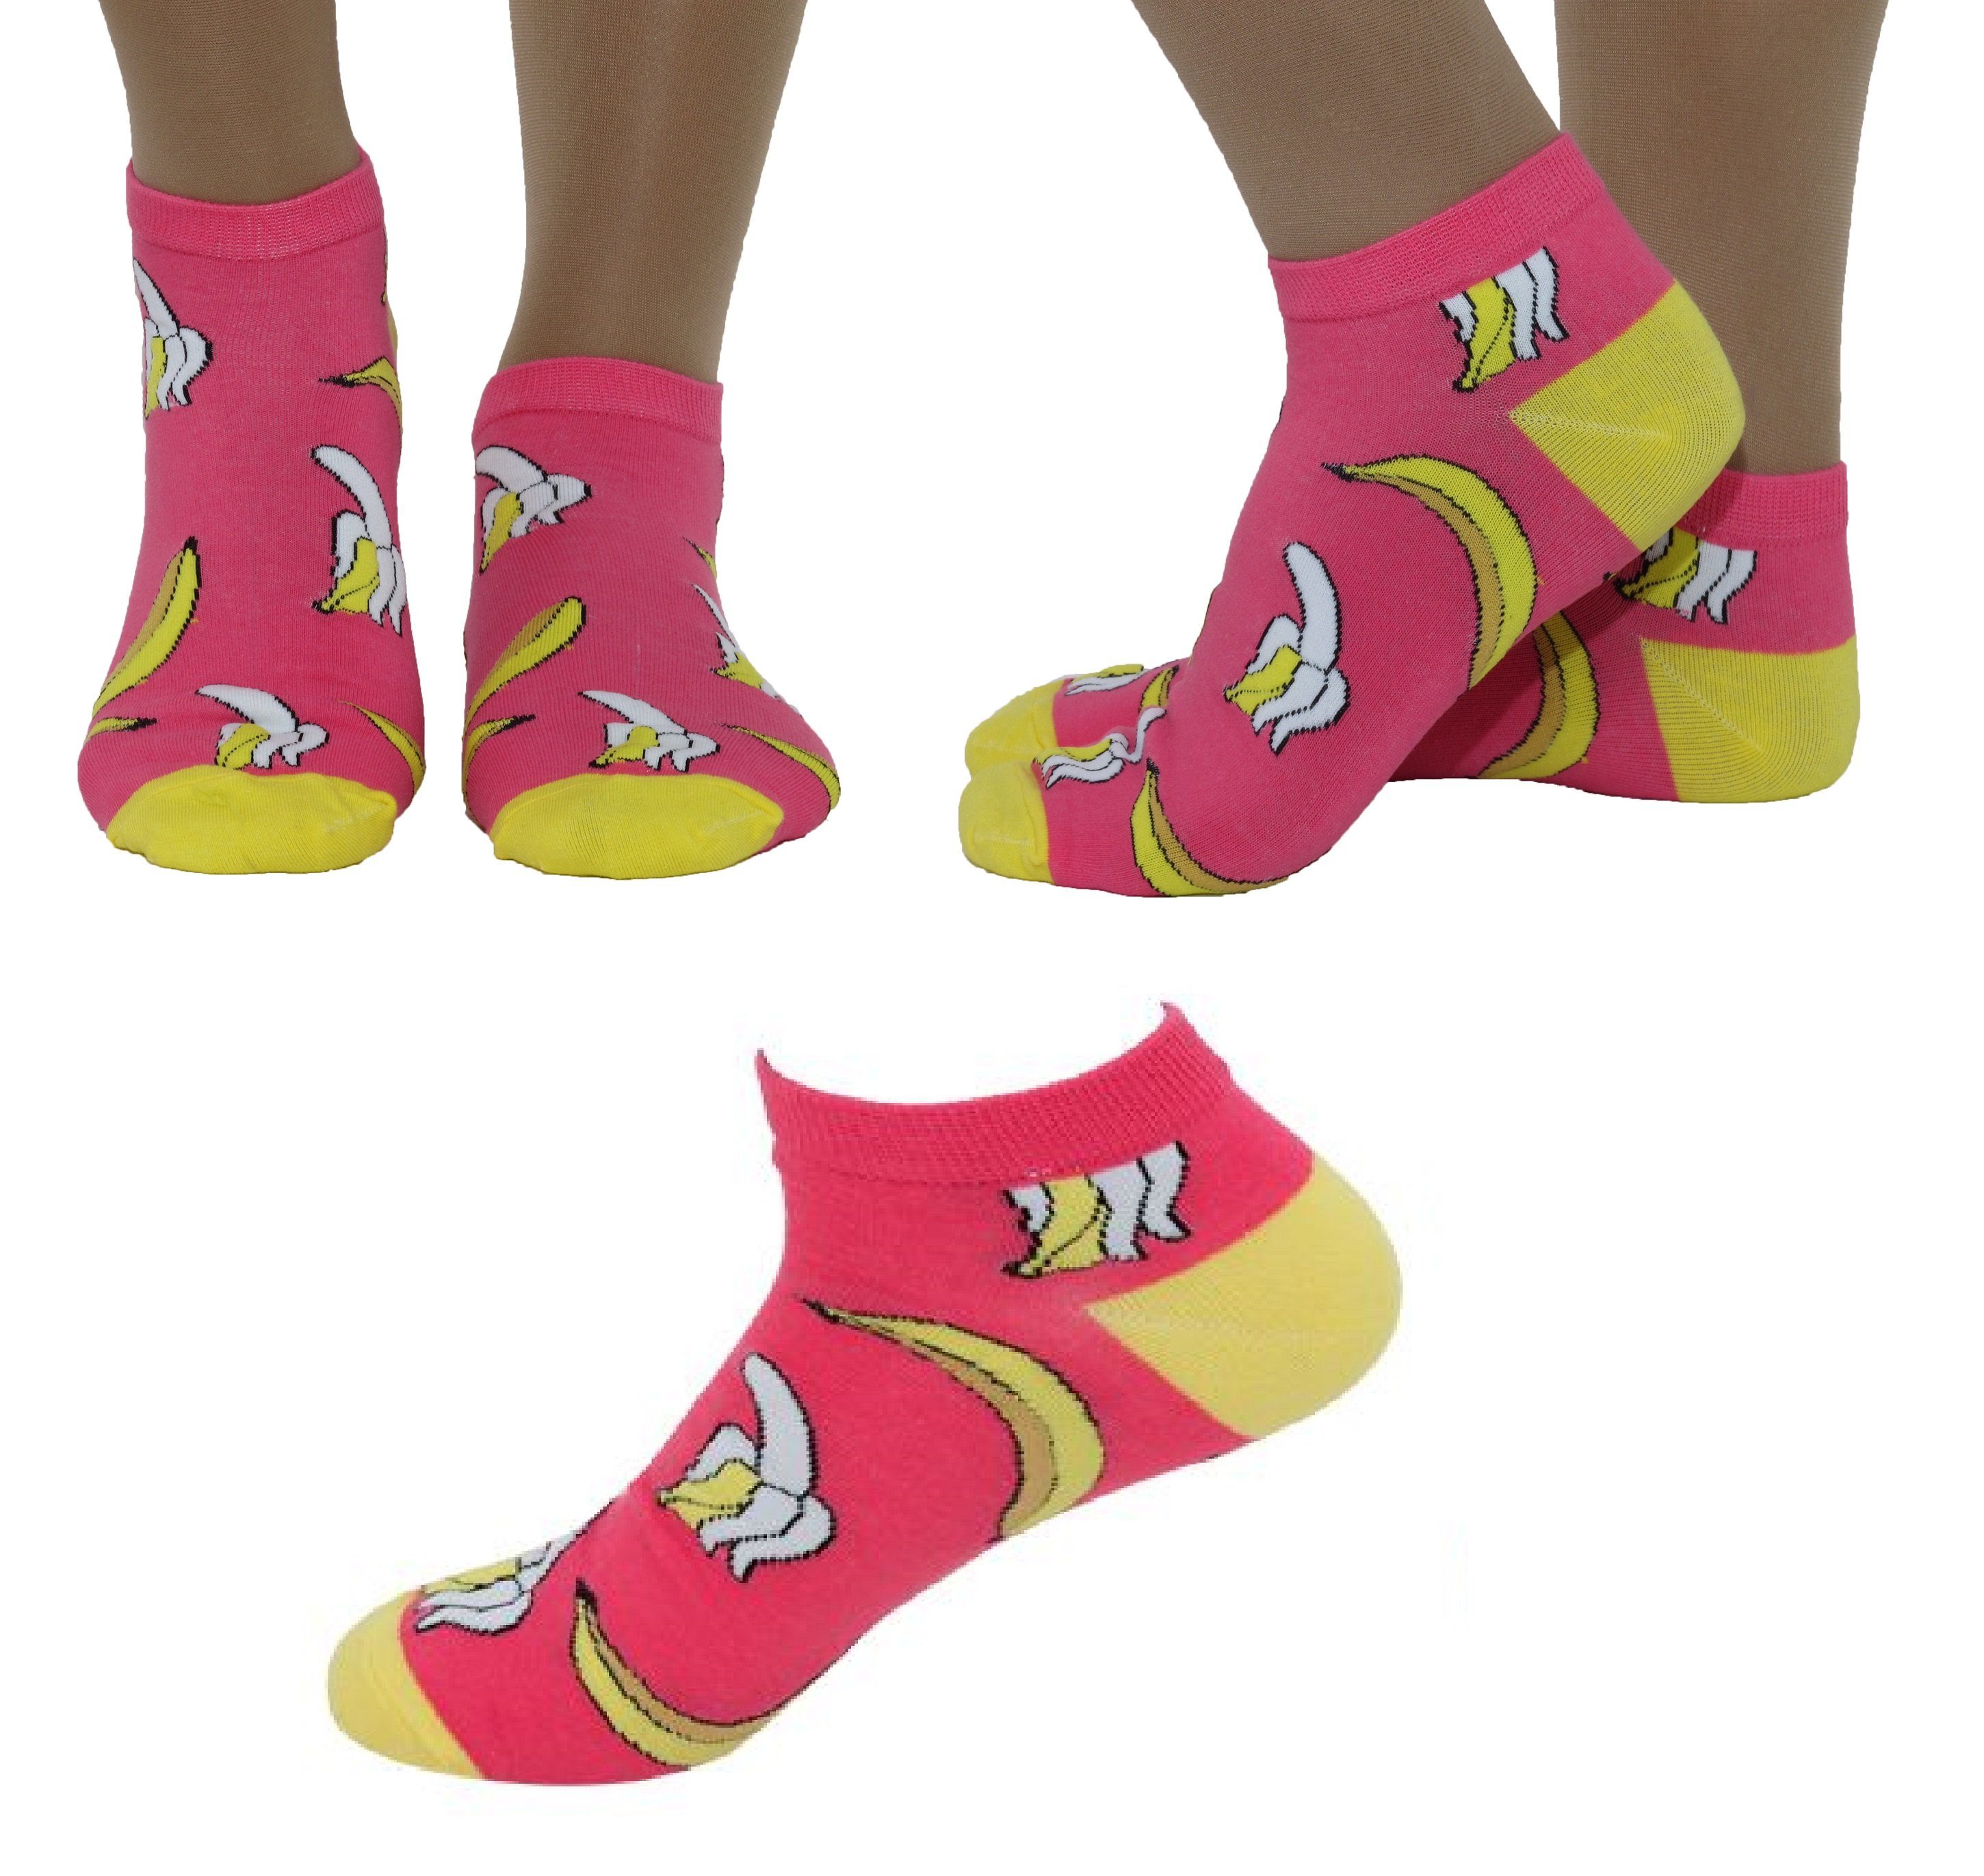 Rungassi Sneakersocken Damen Crazy Socken Sneaker Socken Kurz Gr. 39-42 B Pink